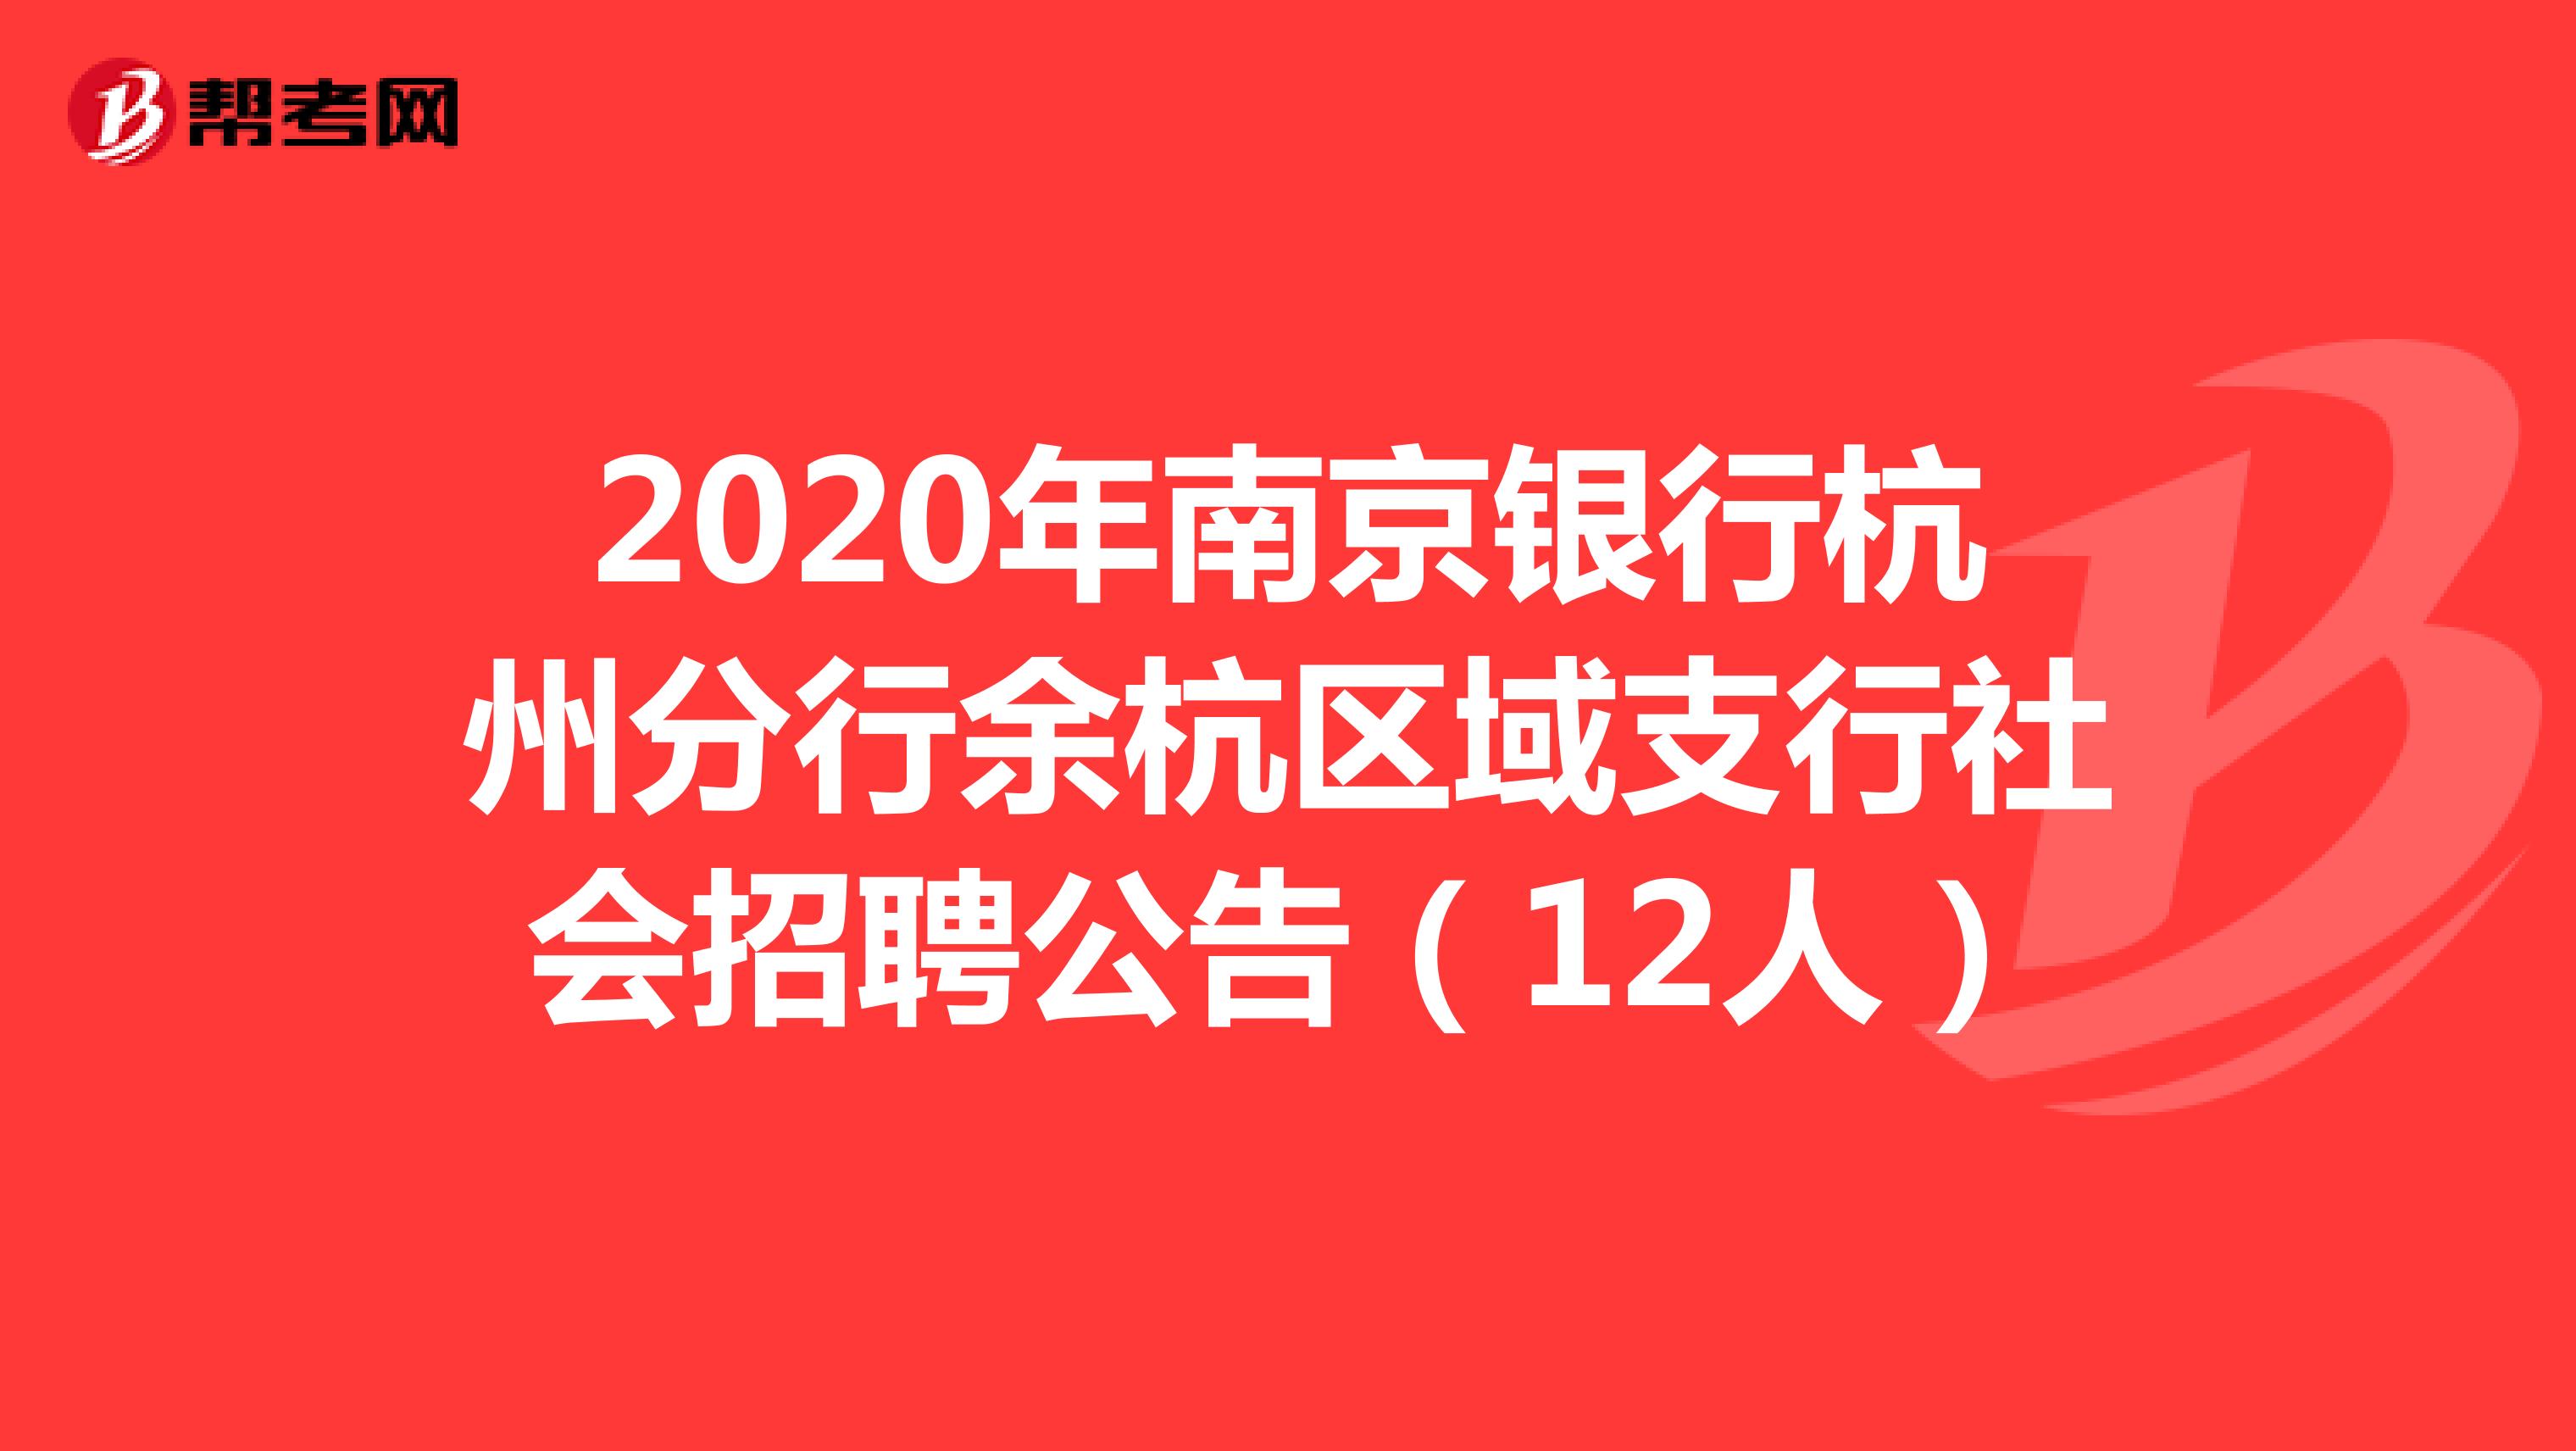 2020年南京银行杭州分行余杭区域支行社会招聘公告（12人）